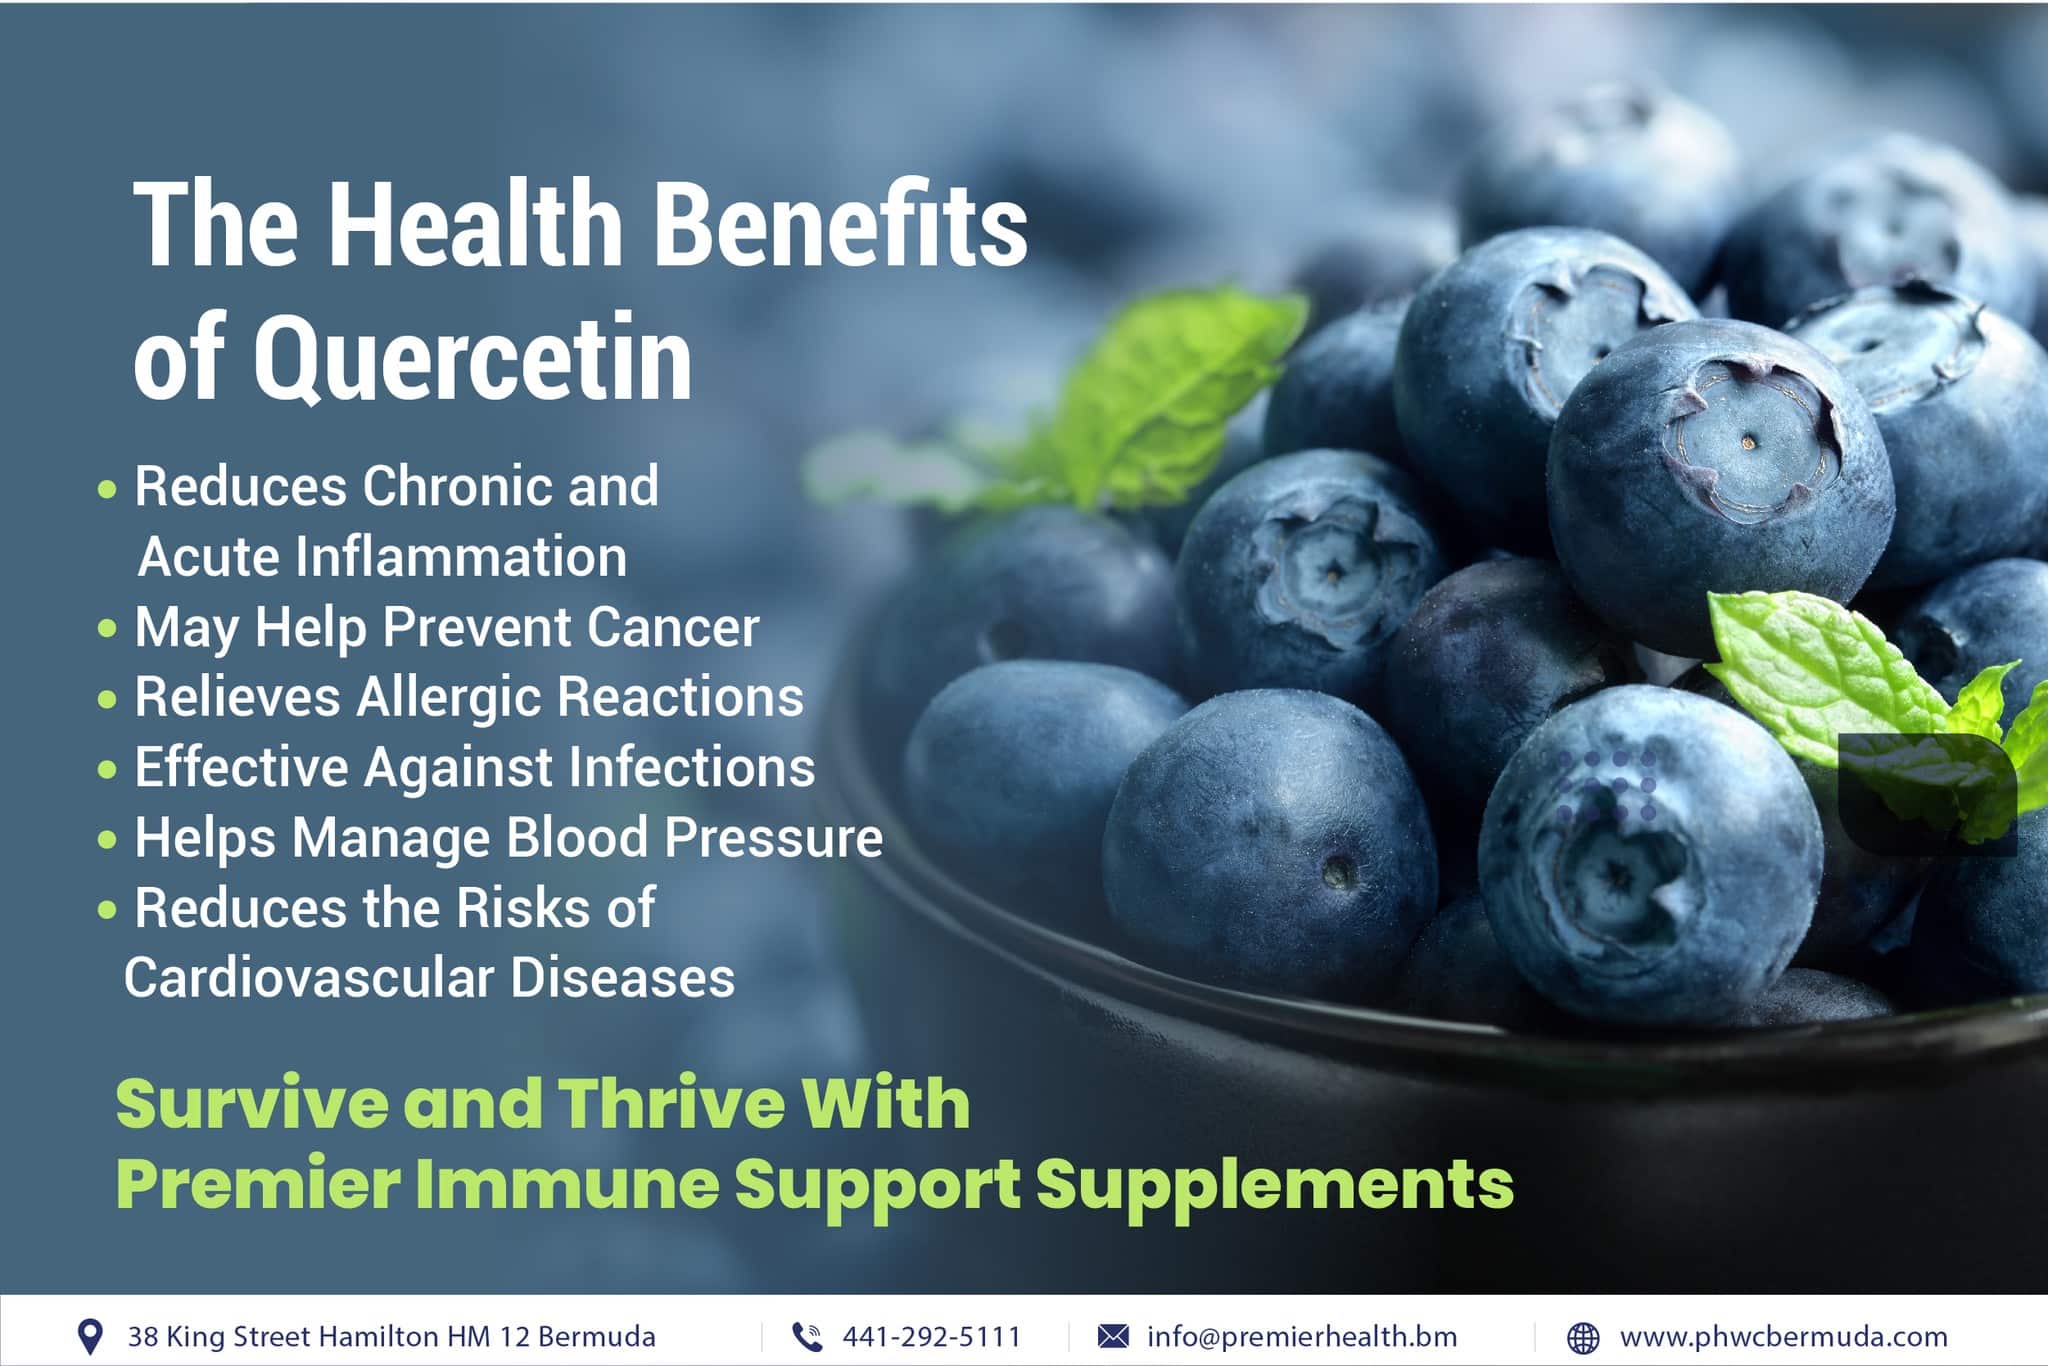 Health Benefots of Quercetin (1)